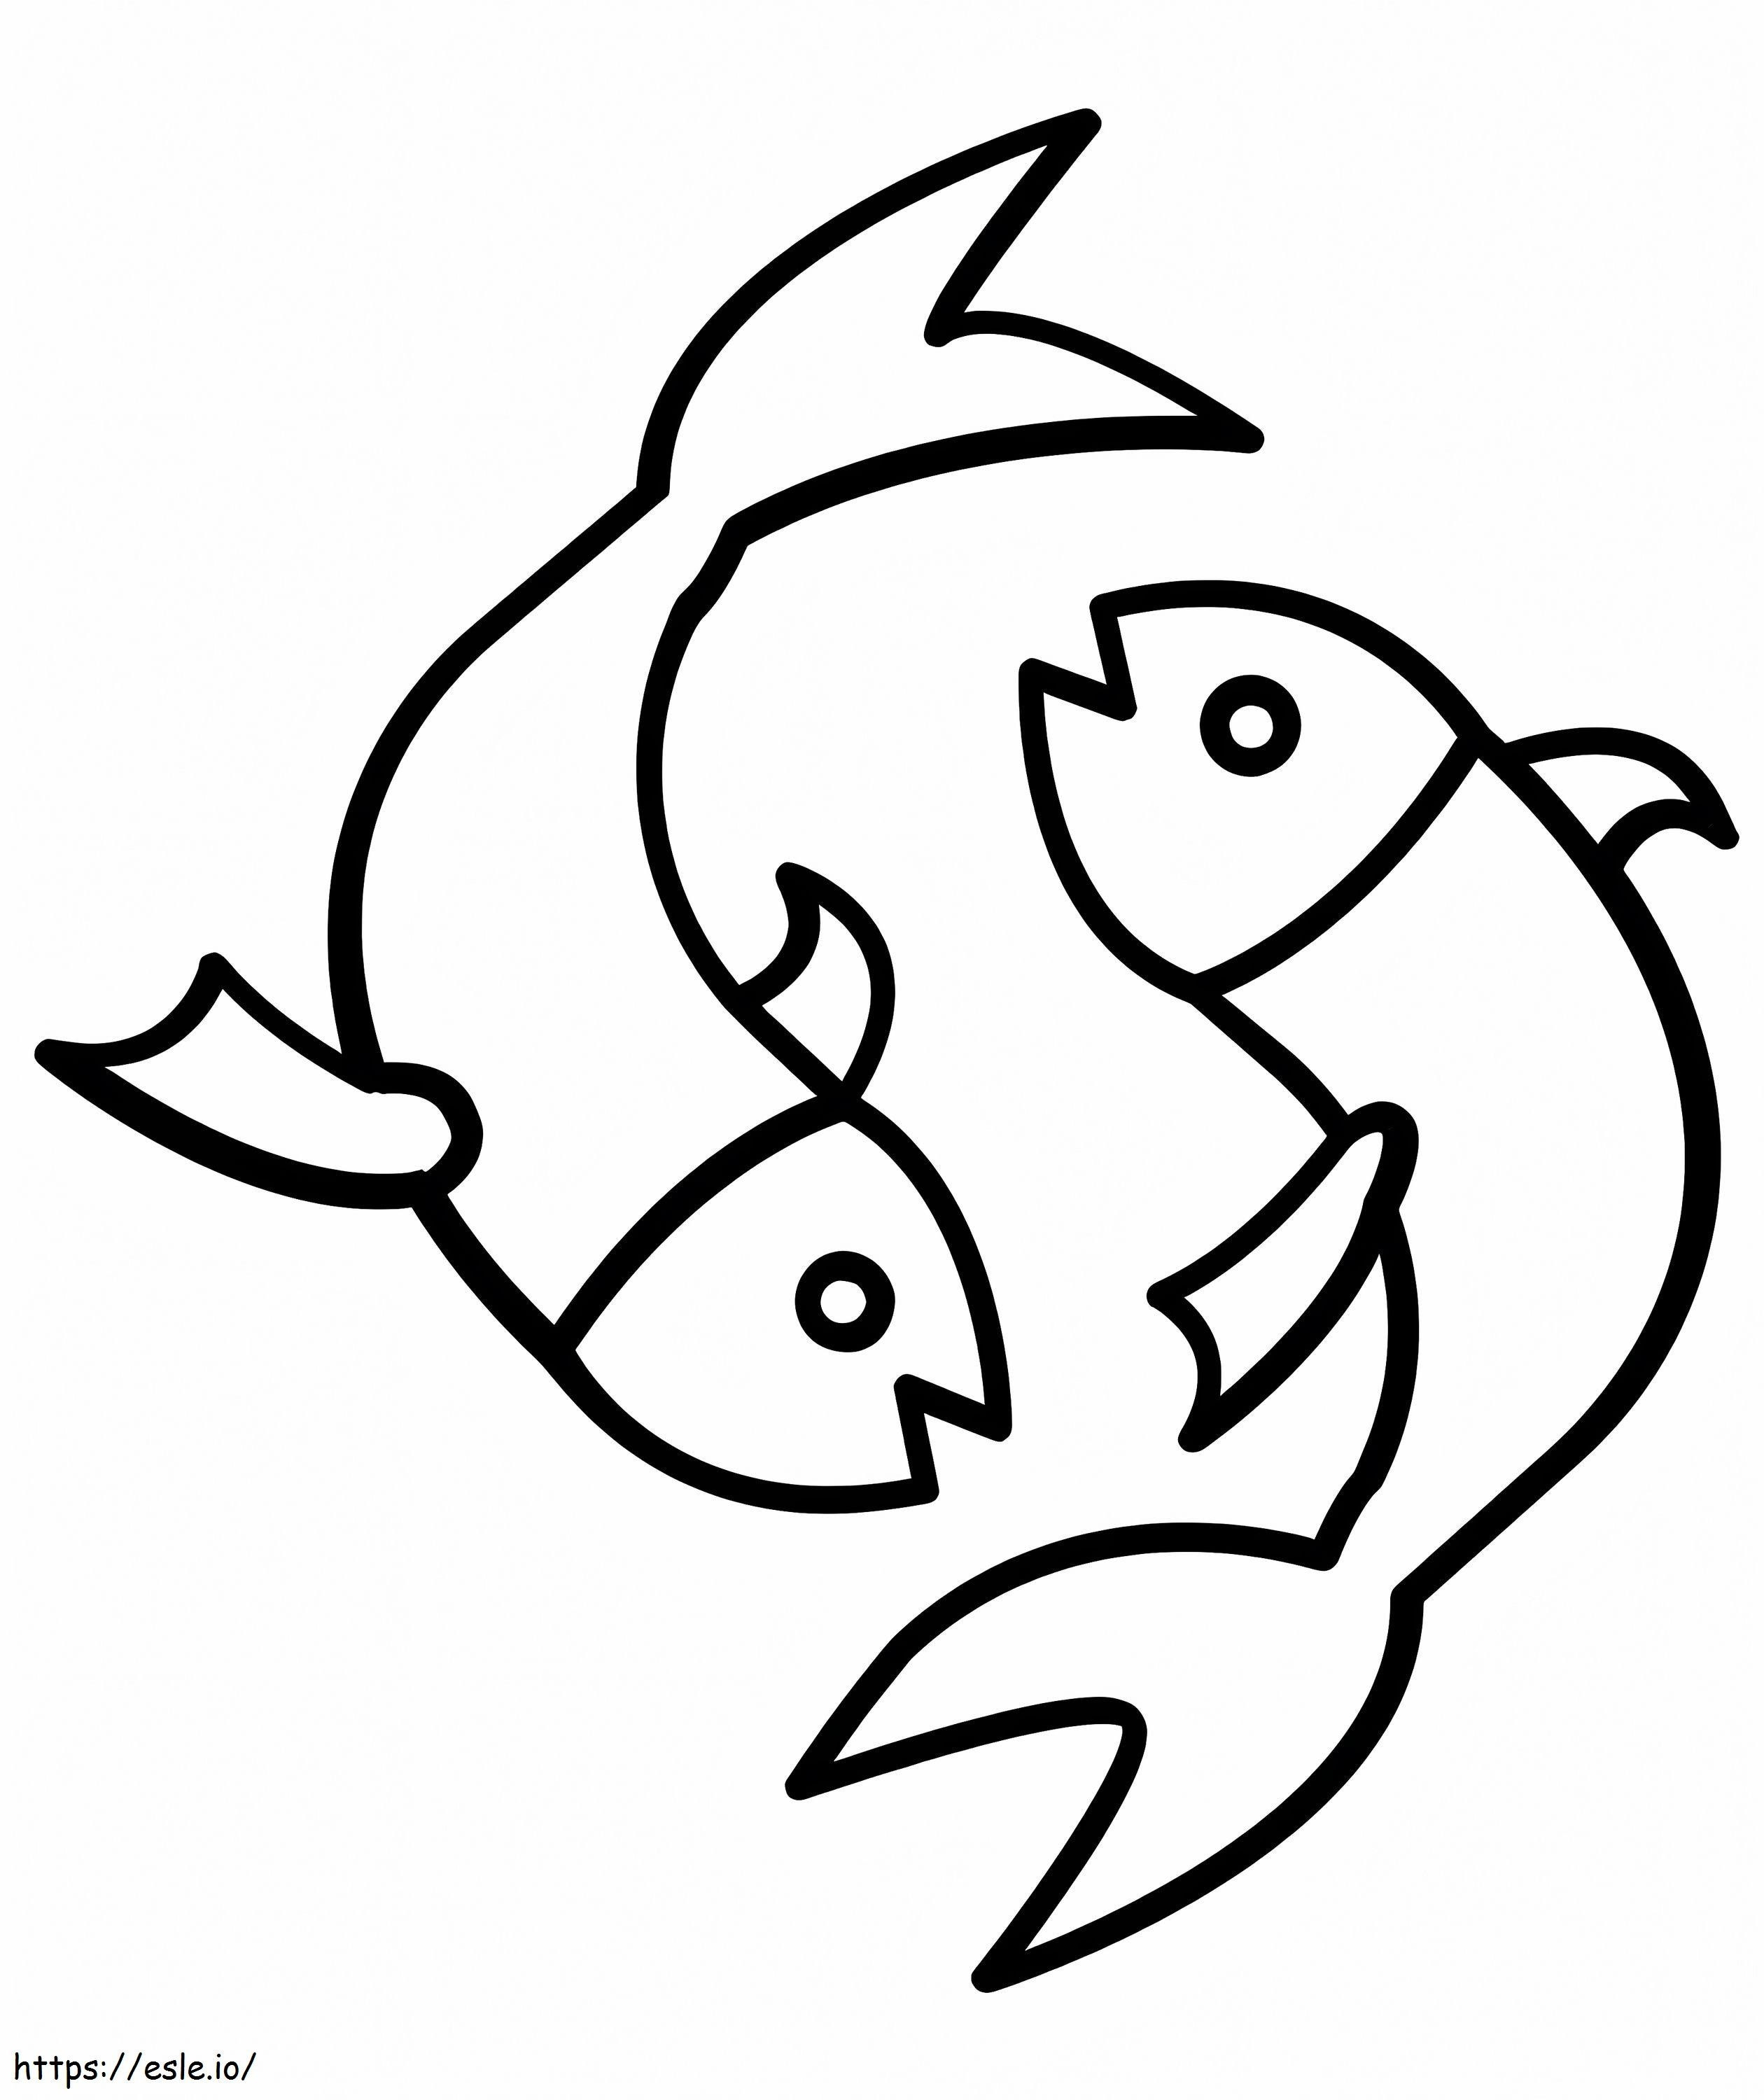 Simbolo Pesci Facile da colorare